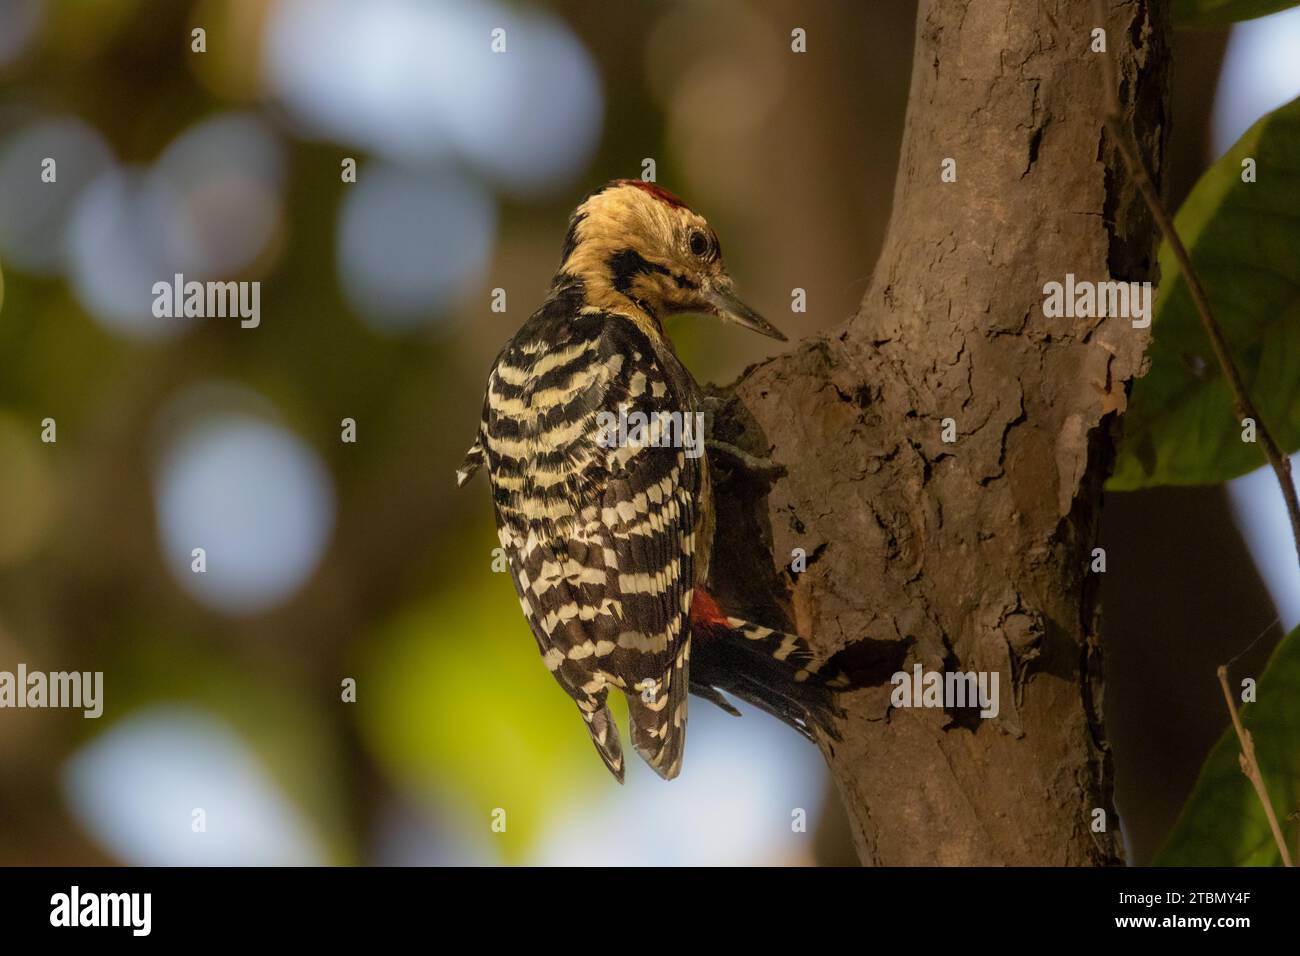 Birds in Bangladesh Stock Photo